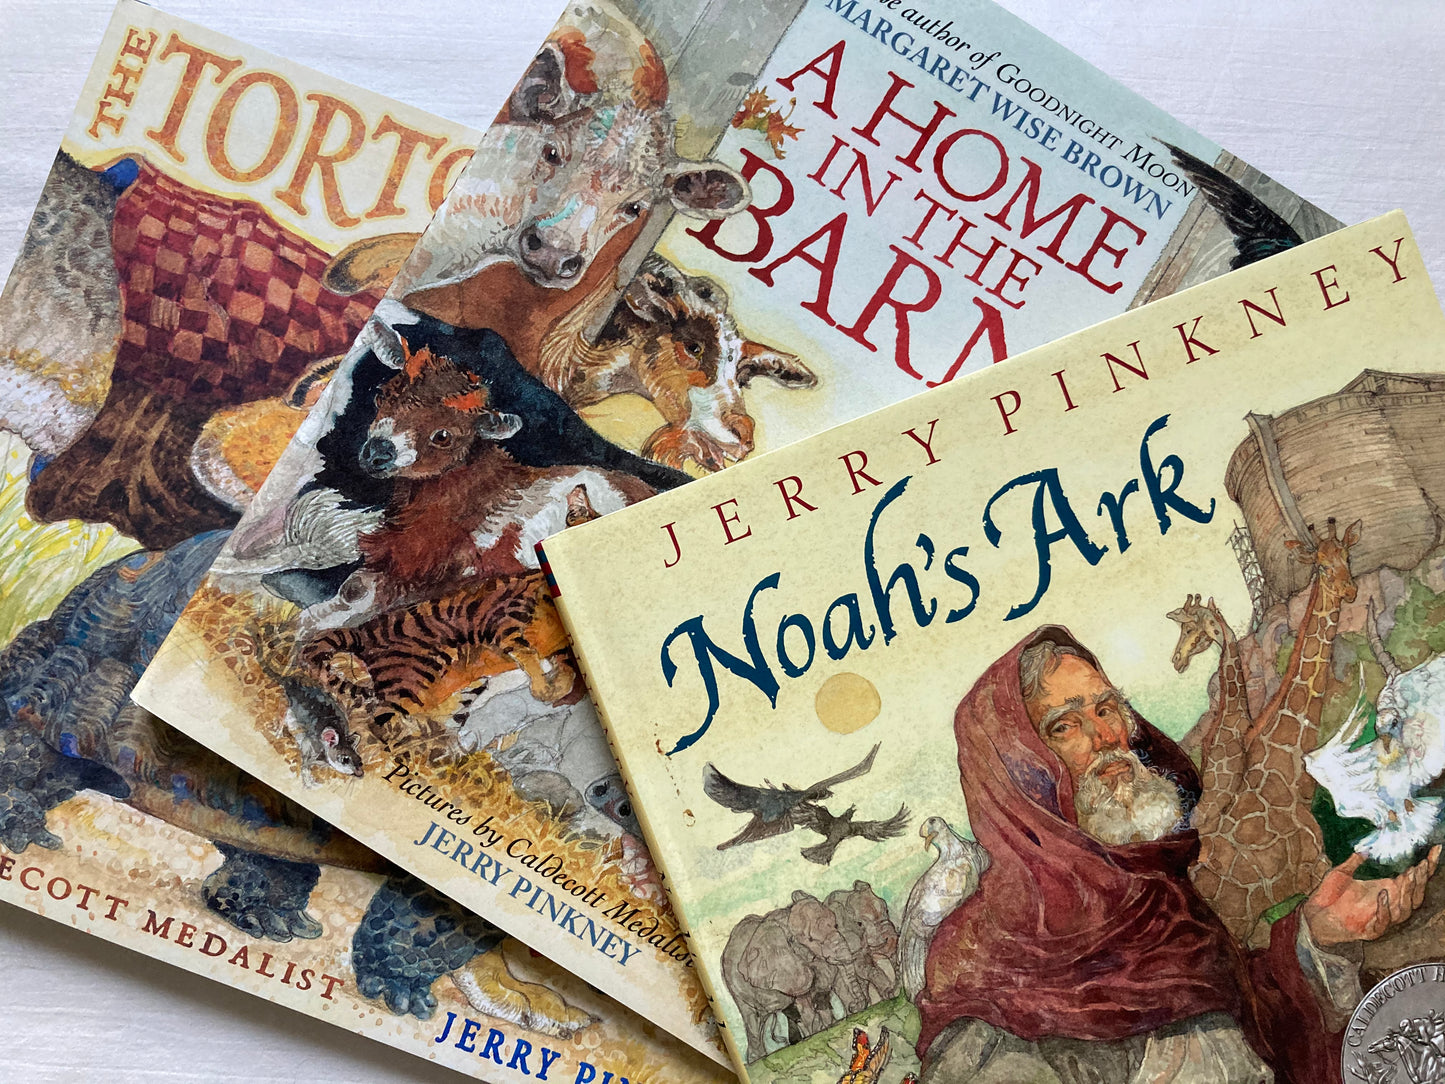 Children's Picture Book - NOAH'S ARK